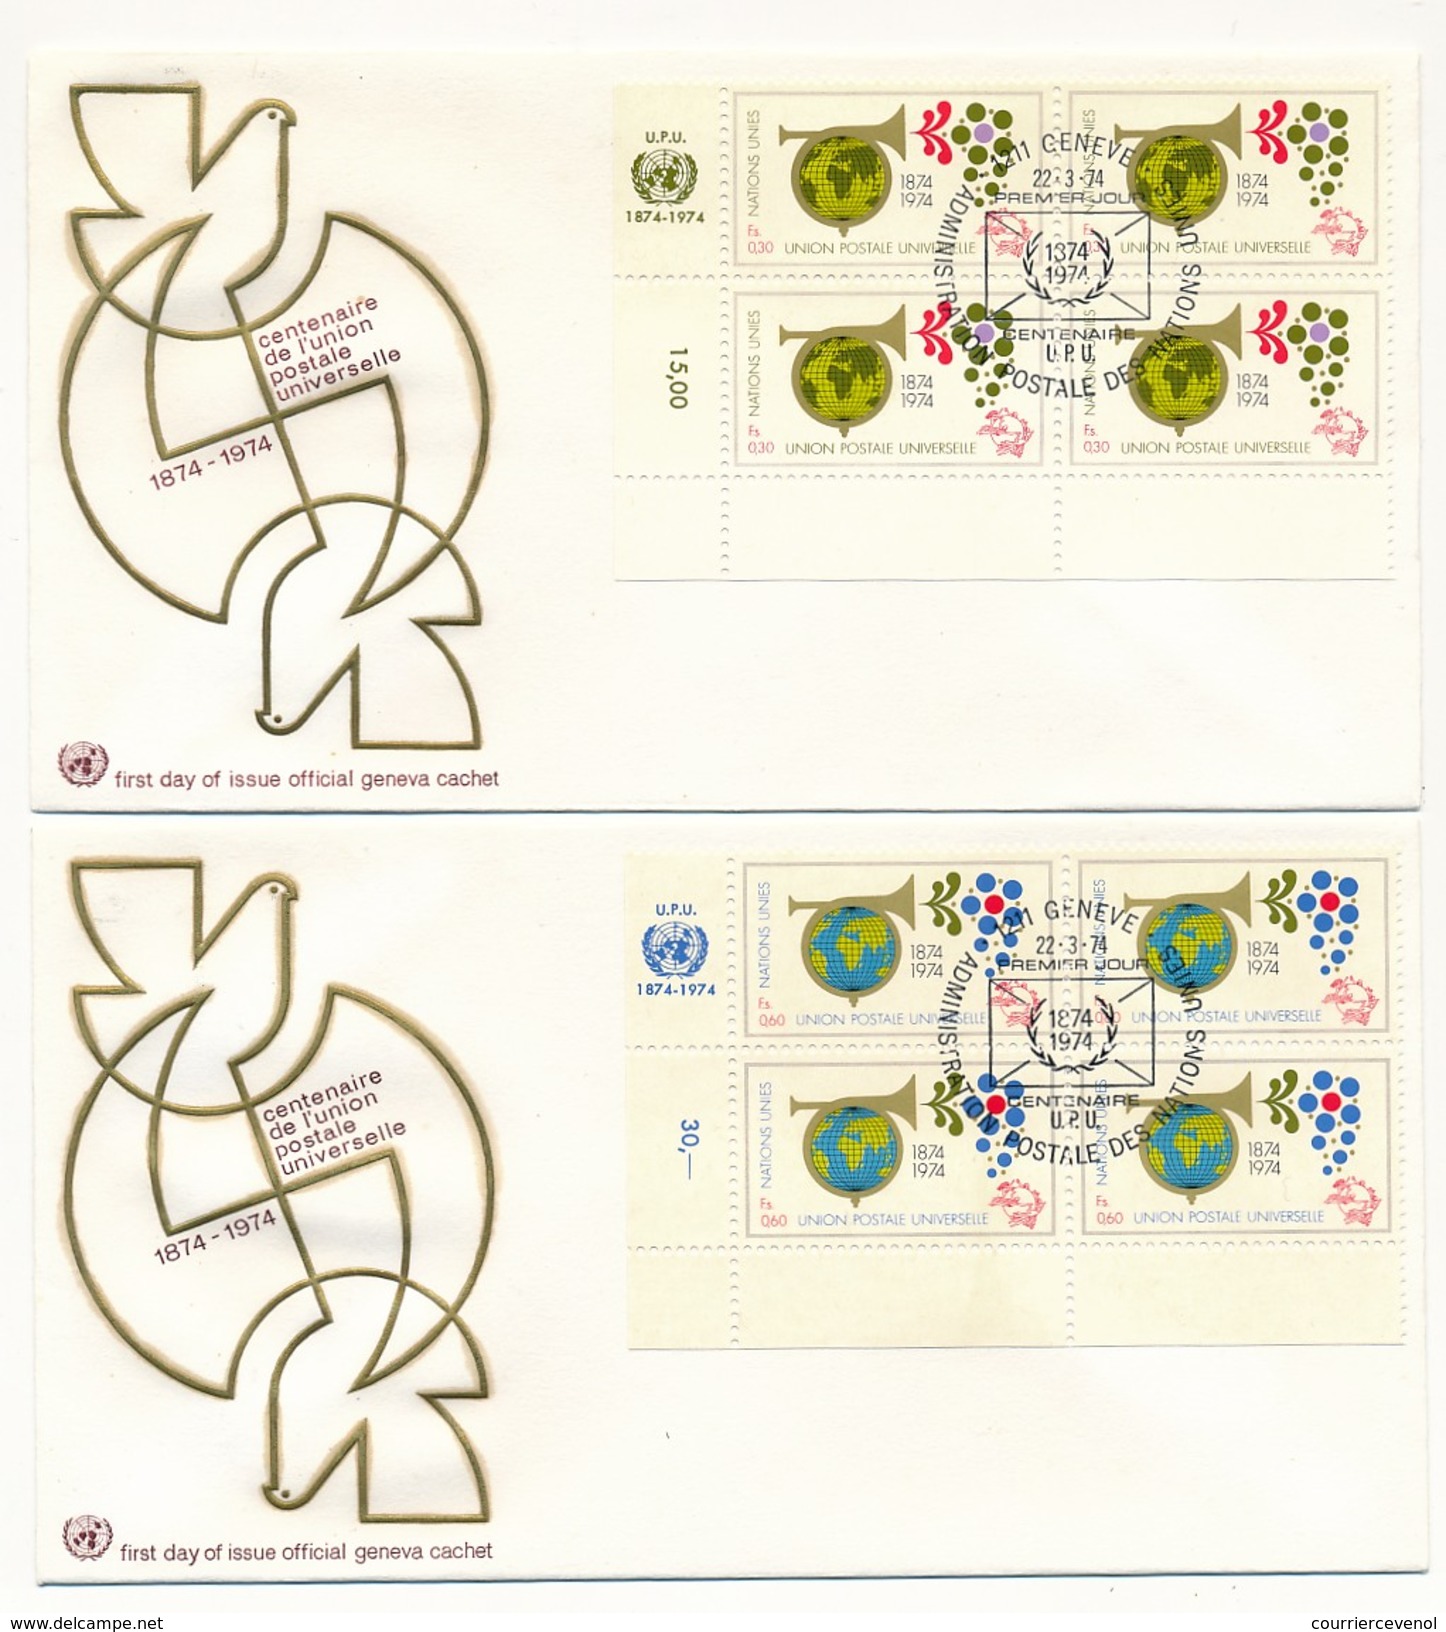 NATIONS UNIES - 7 Enveloppes FDC - Centenaire De L'Union Postale Universelle - New-York / Genève - 1974 - U.P.U.